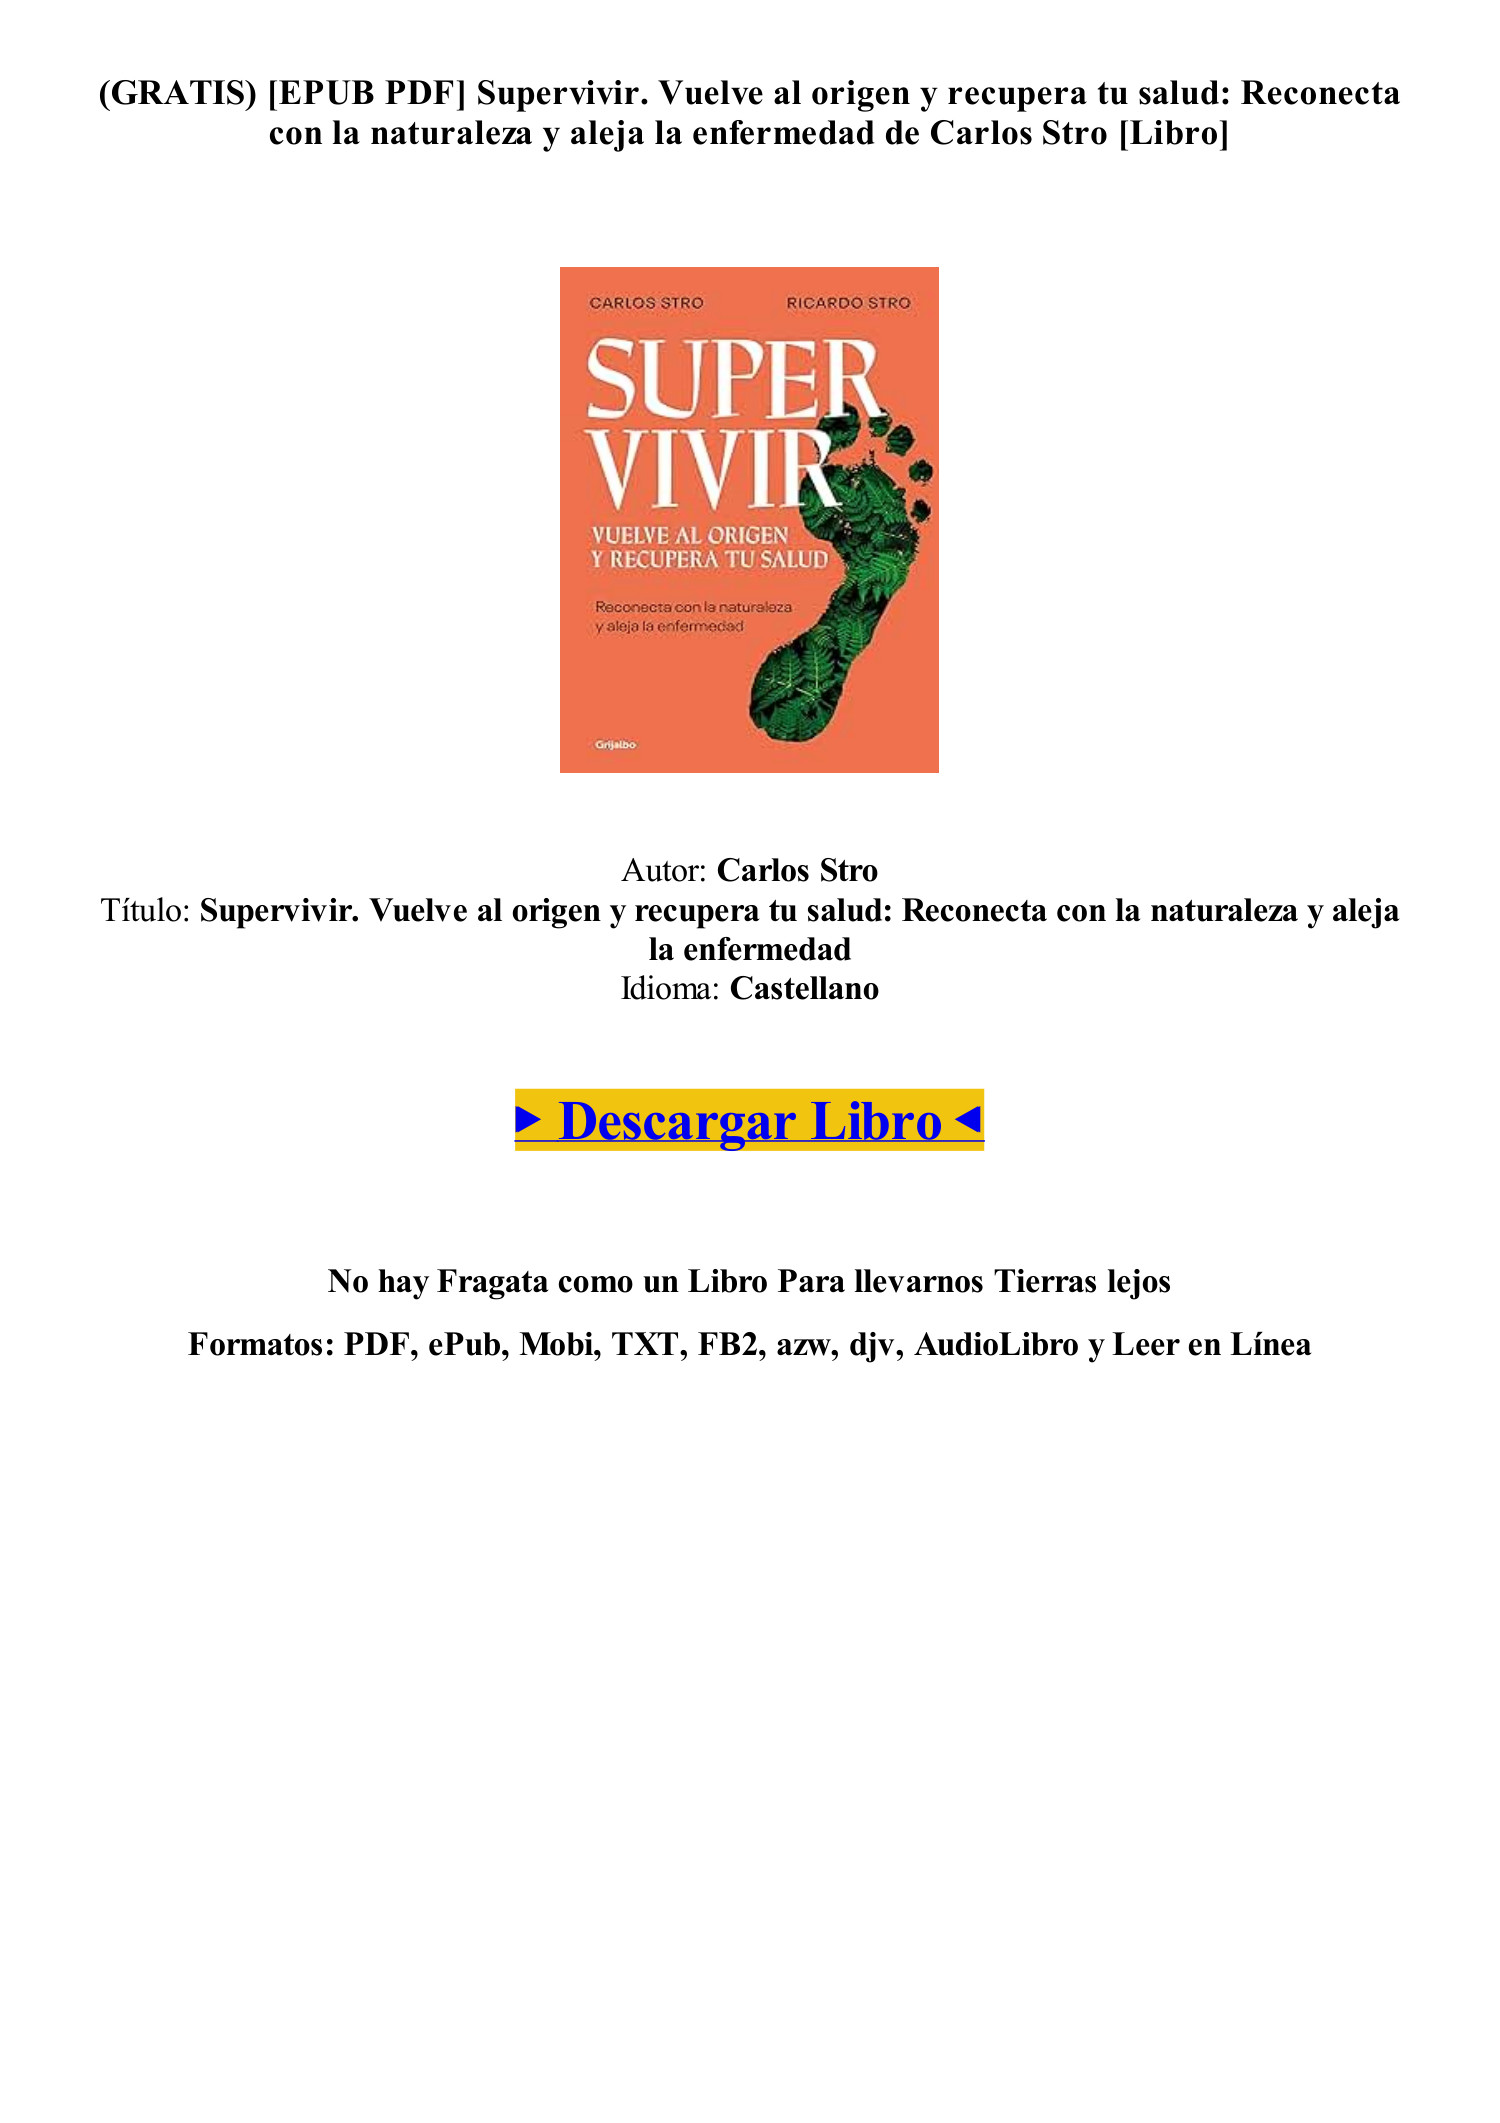 EPUB PDF] Libro Supervivir. Vuelve al origen y recupera tu salud de Carlos  Stro [mobi].pdf